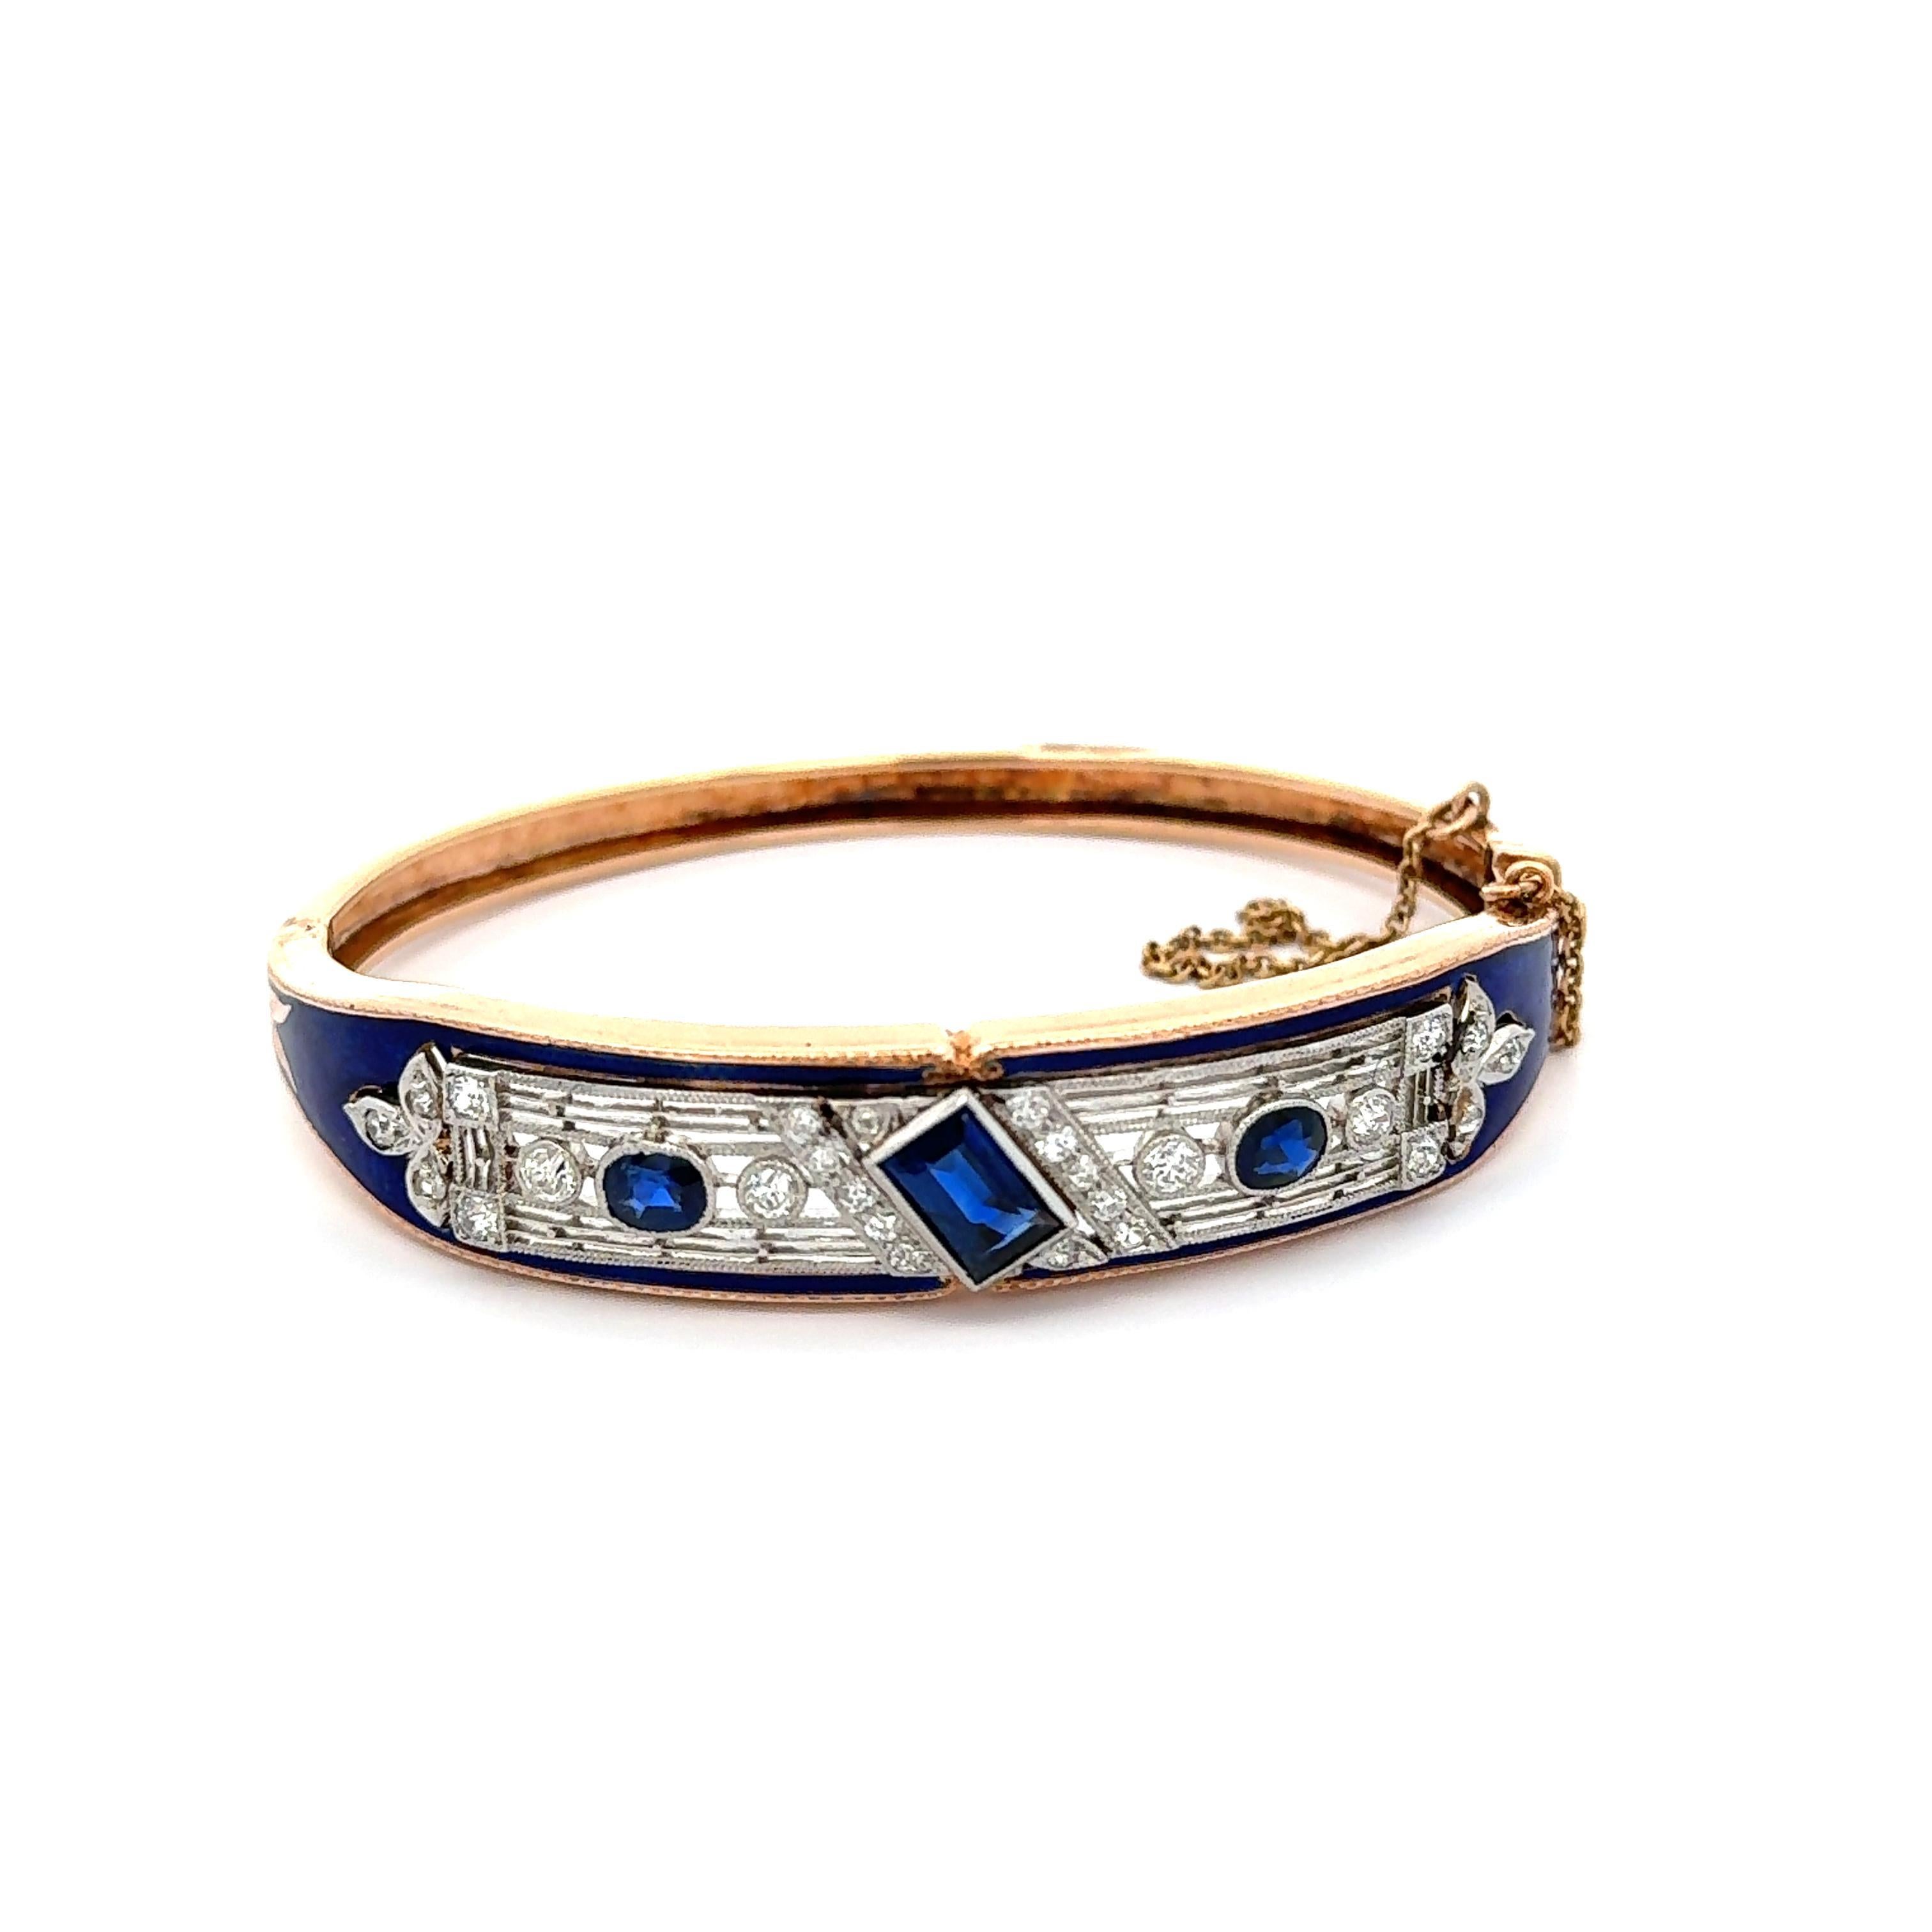 Vintage Art Deco Estate Blue Sapphire, Diamond & Enamel Bangle Bracelet For Sale 3